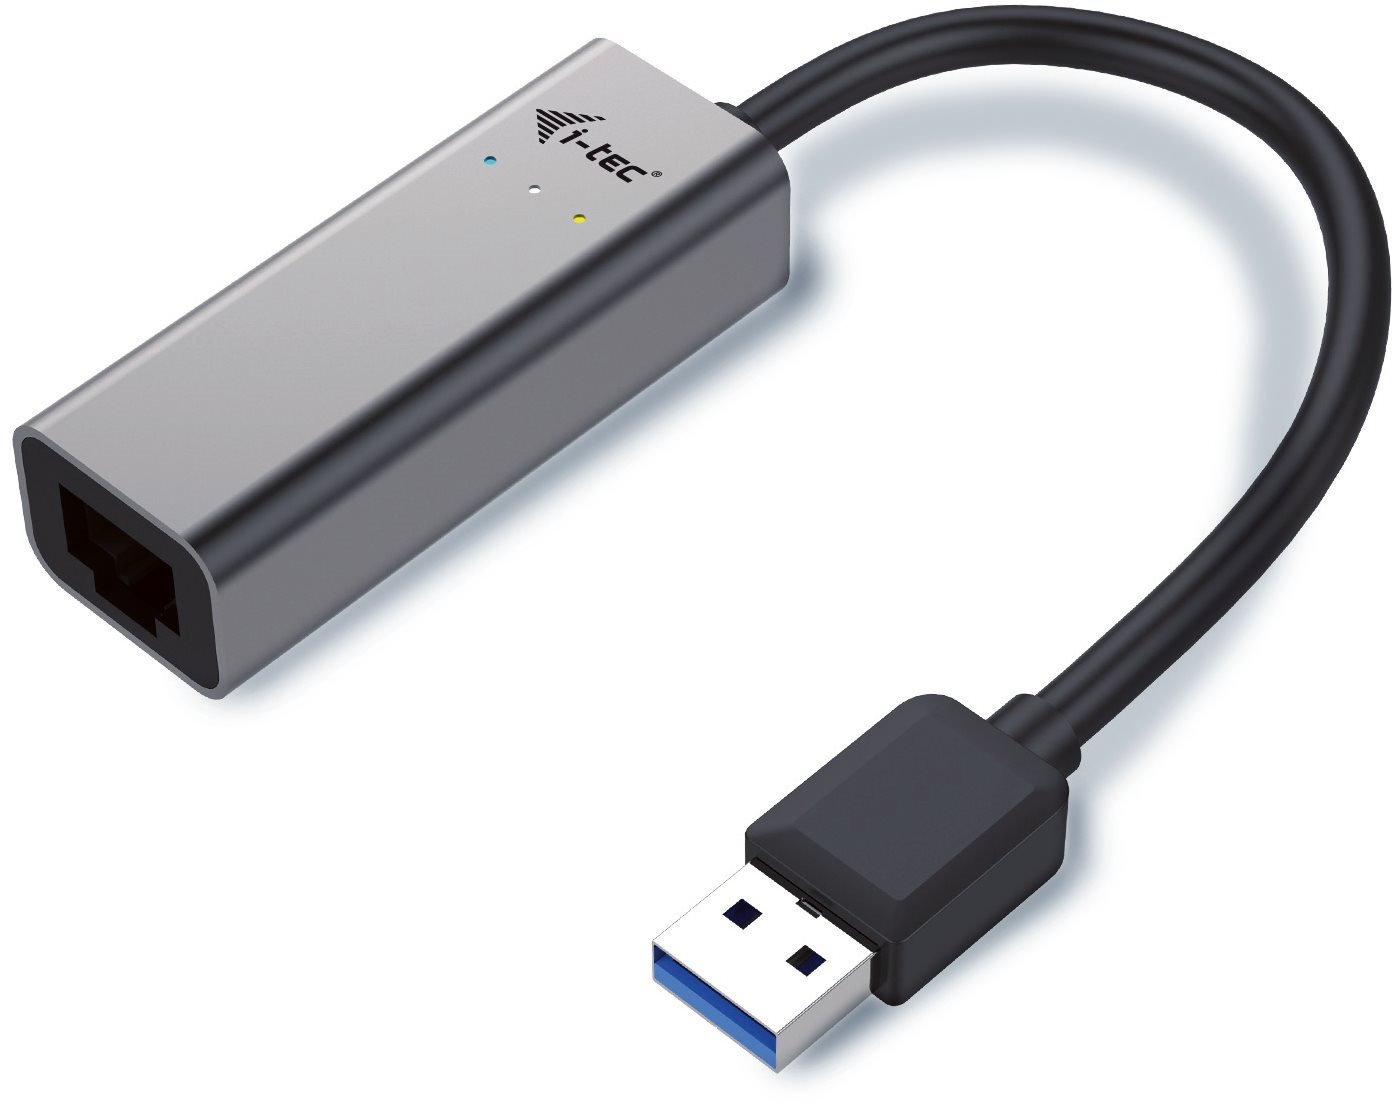 Átalakító I-TEC USB 3.0 Metal Gigabit Ethernet